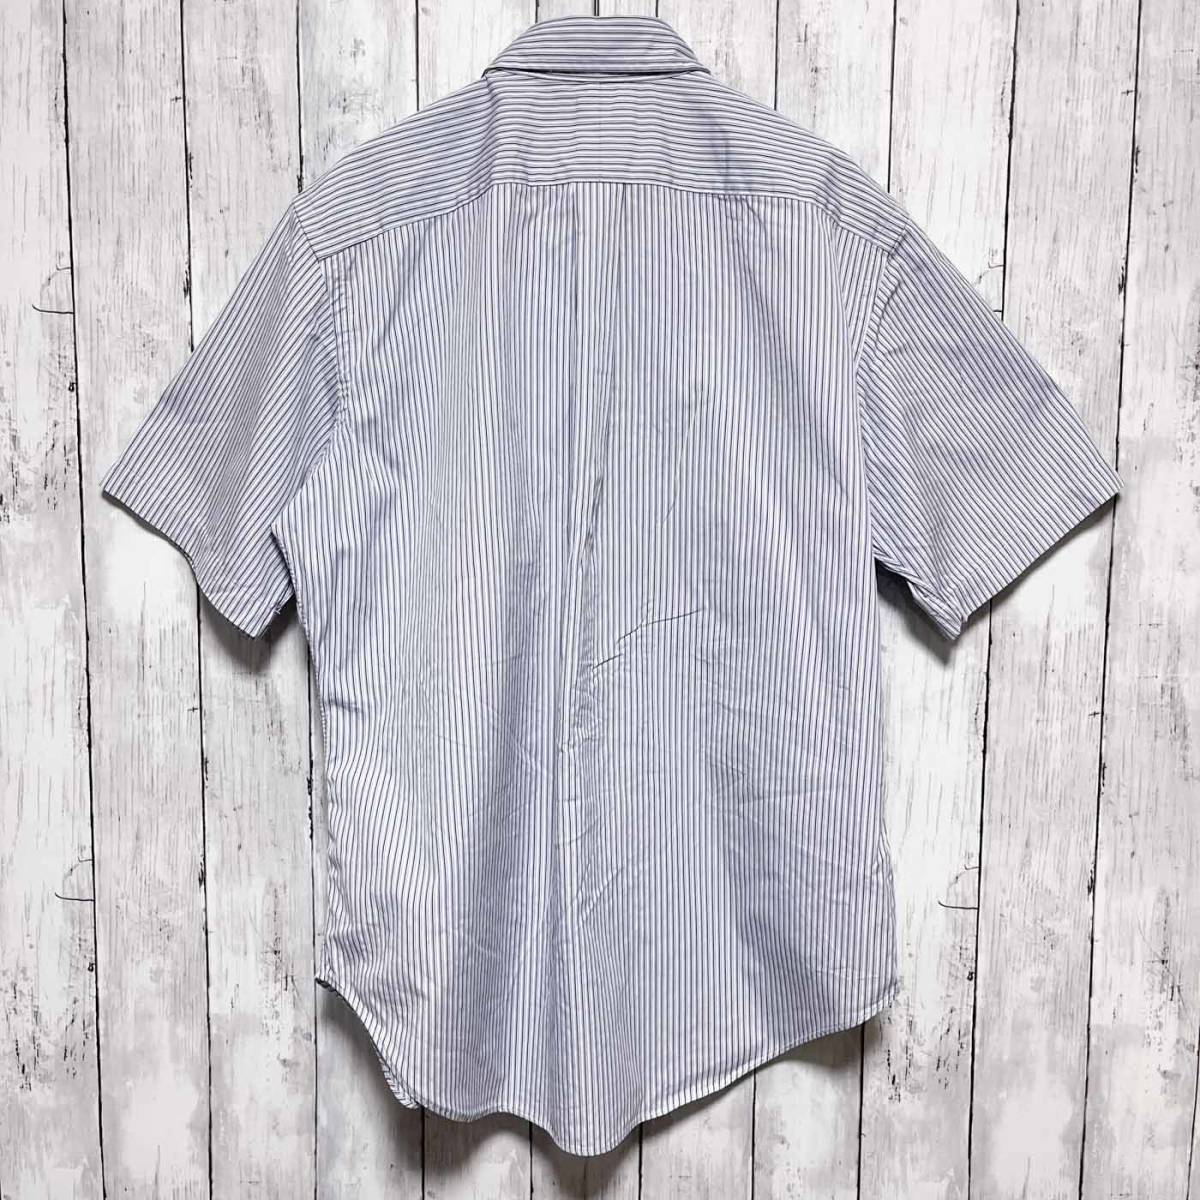 ラルフローレン Ralph Lauren 半袖シャツ ストライプシャツ メンズ ワンポイント コットン100% Lサイズ 3‐483